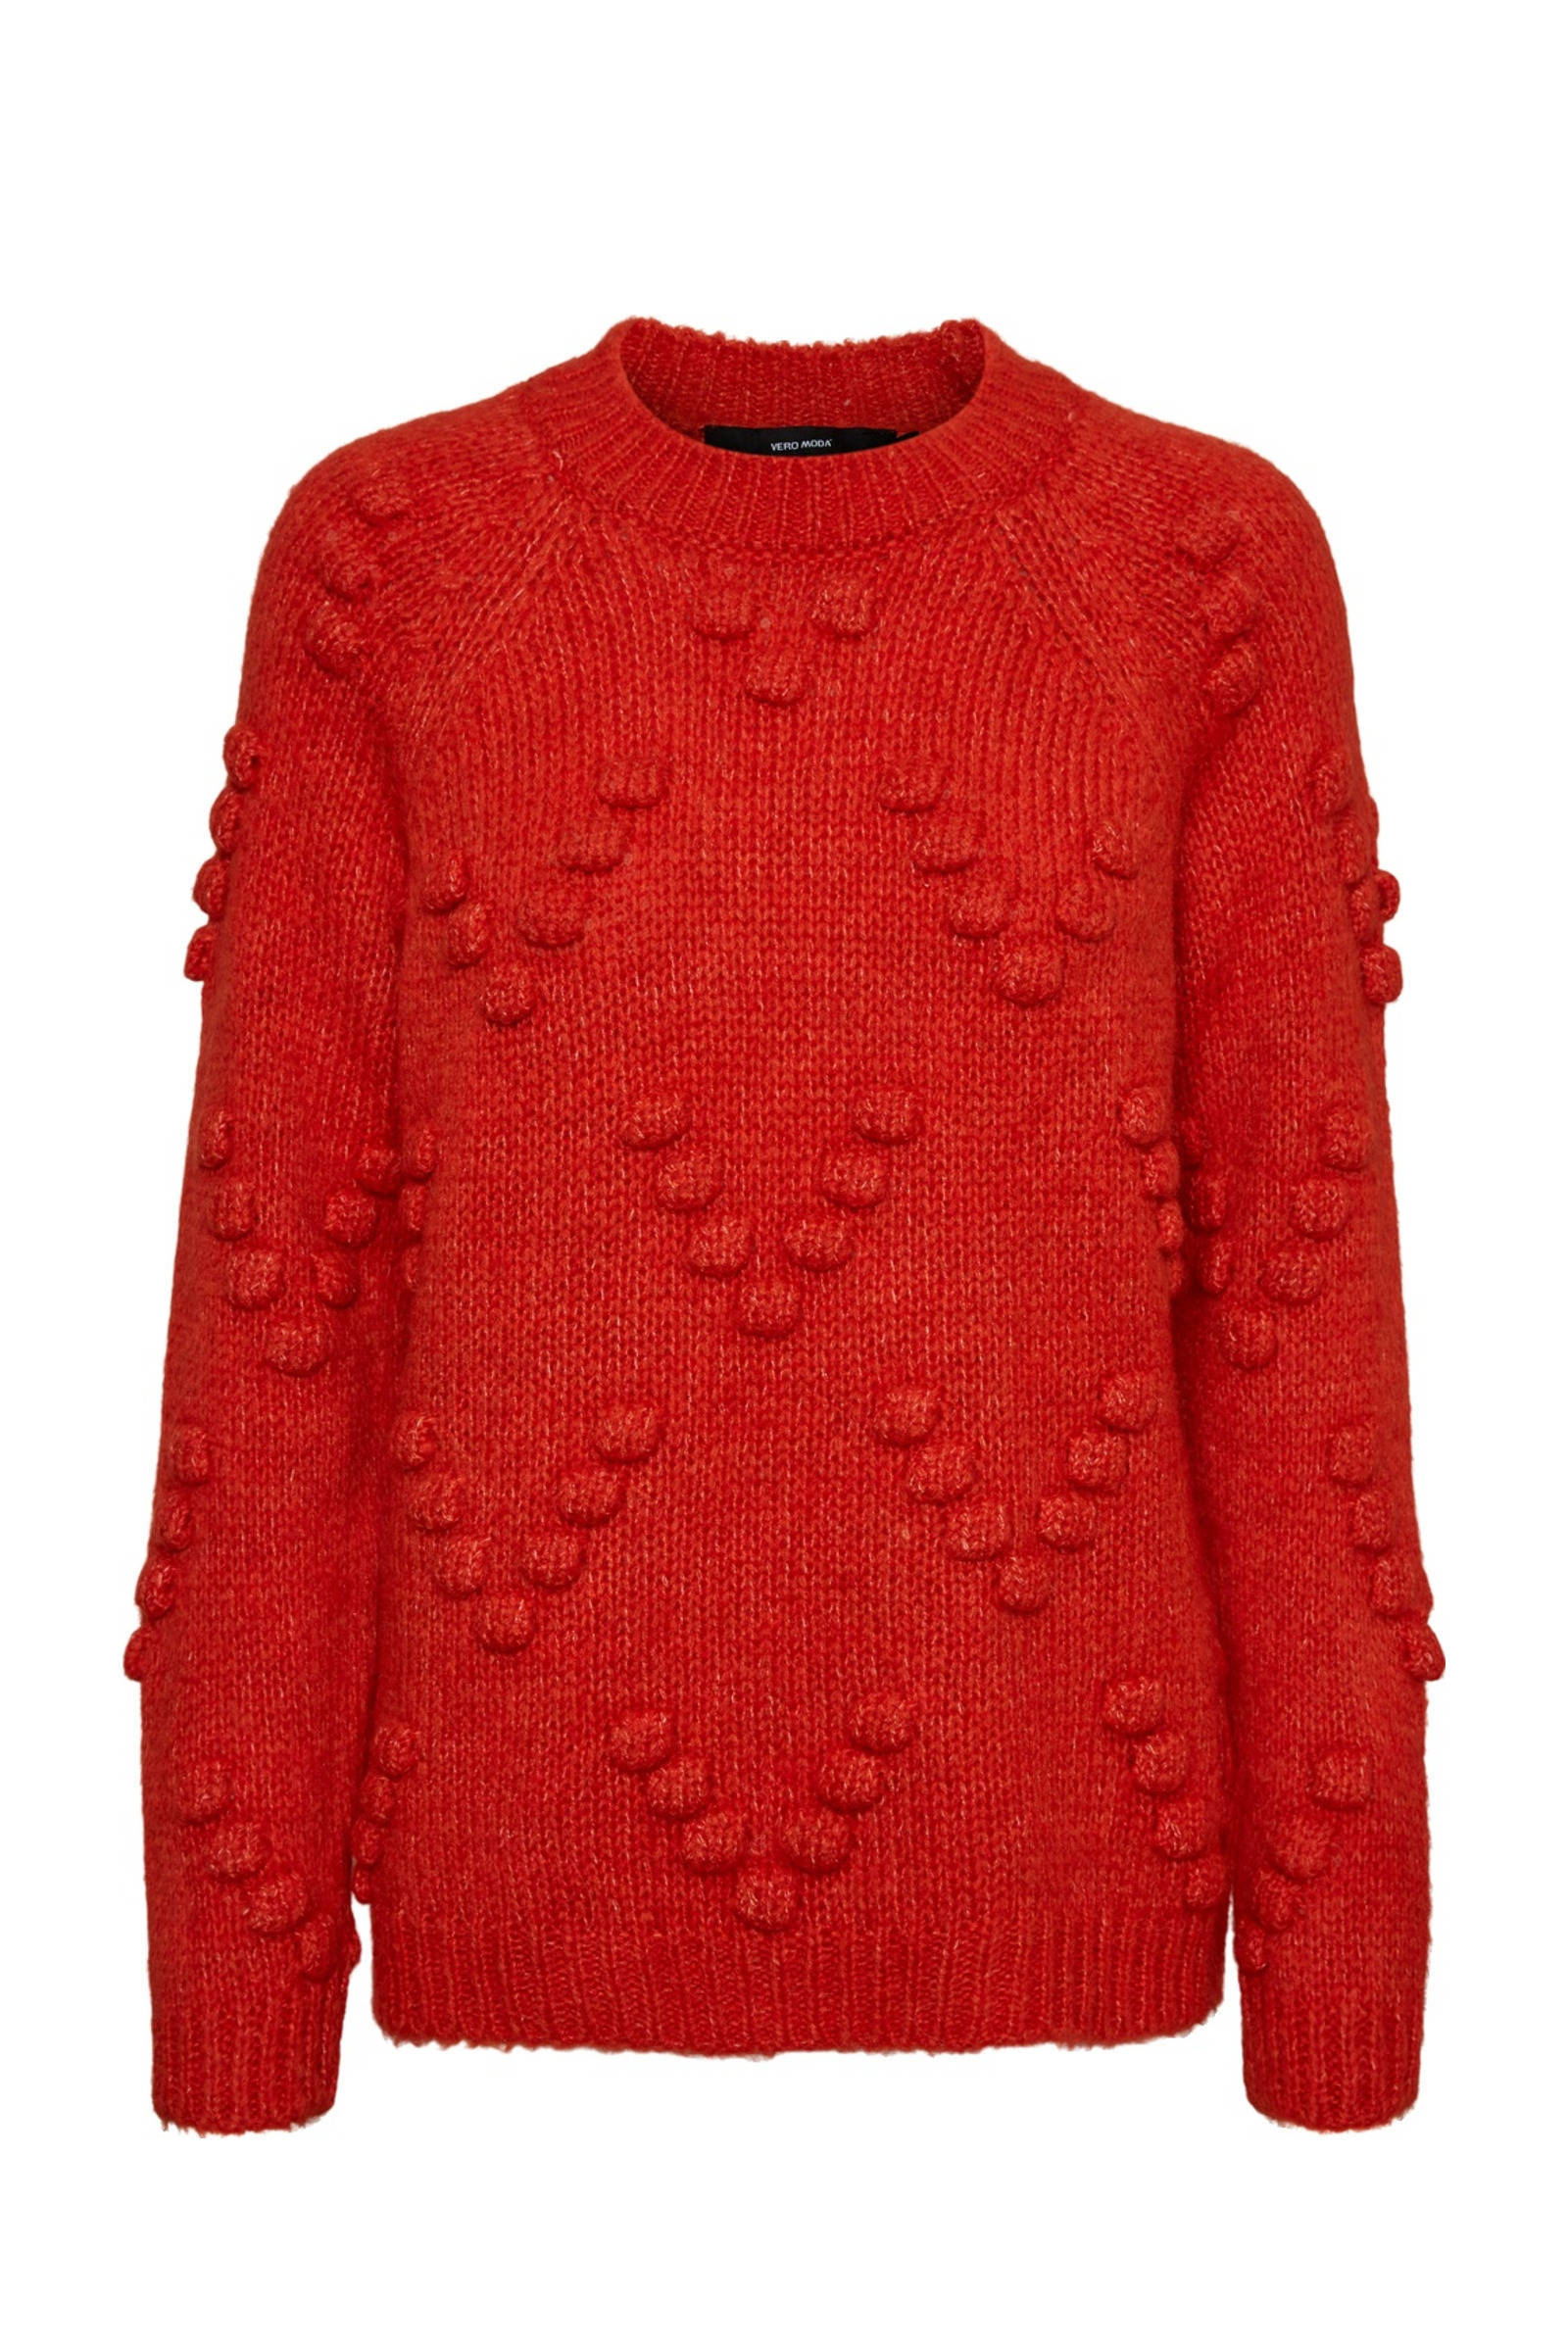 VERO MODA trui rood online kopen